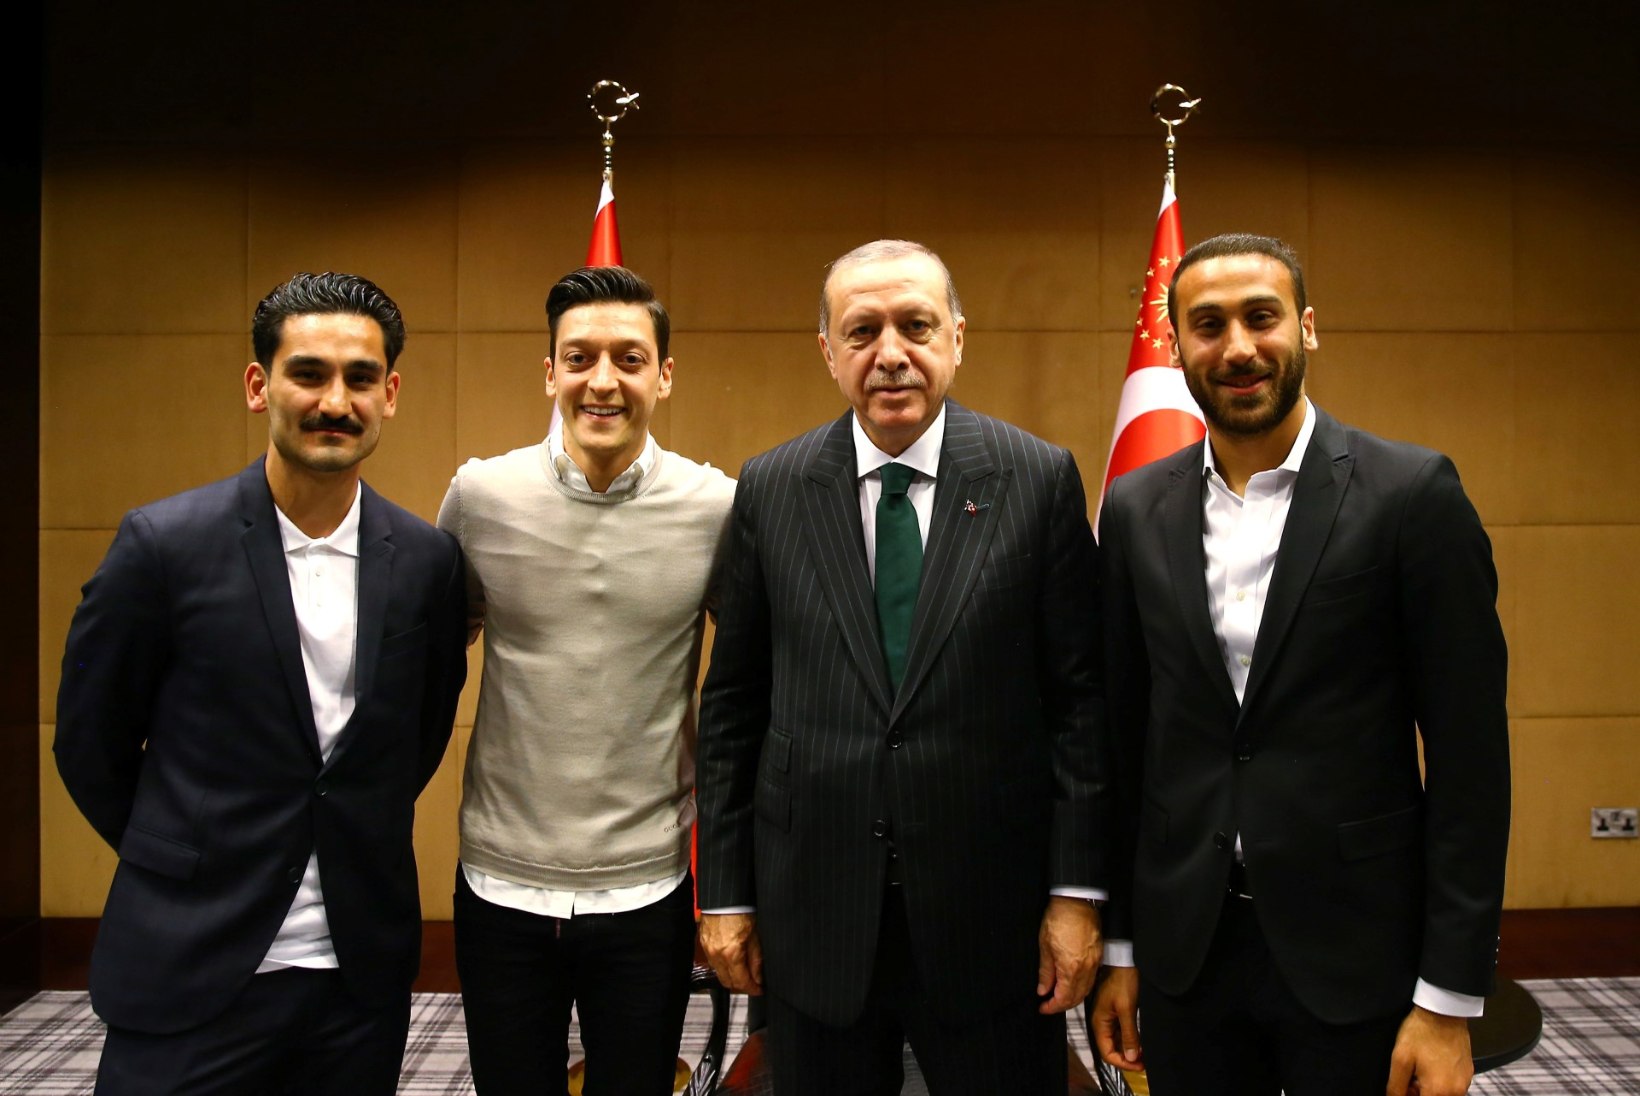 Saksamaa vutistaarid Özil ja Gündogan jäävad MMilt eemale? Mehed sattusid koos Türgi presidendi Erdoganiga skandaali